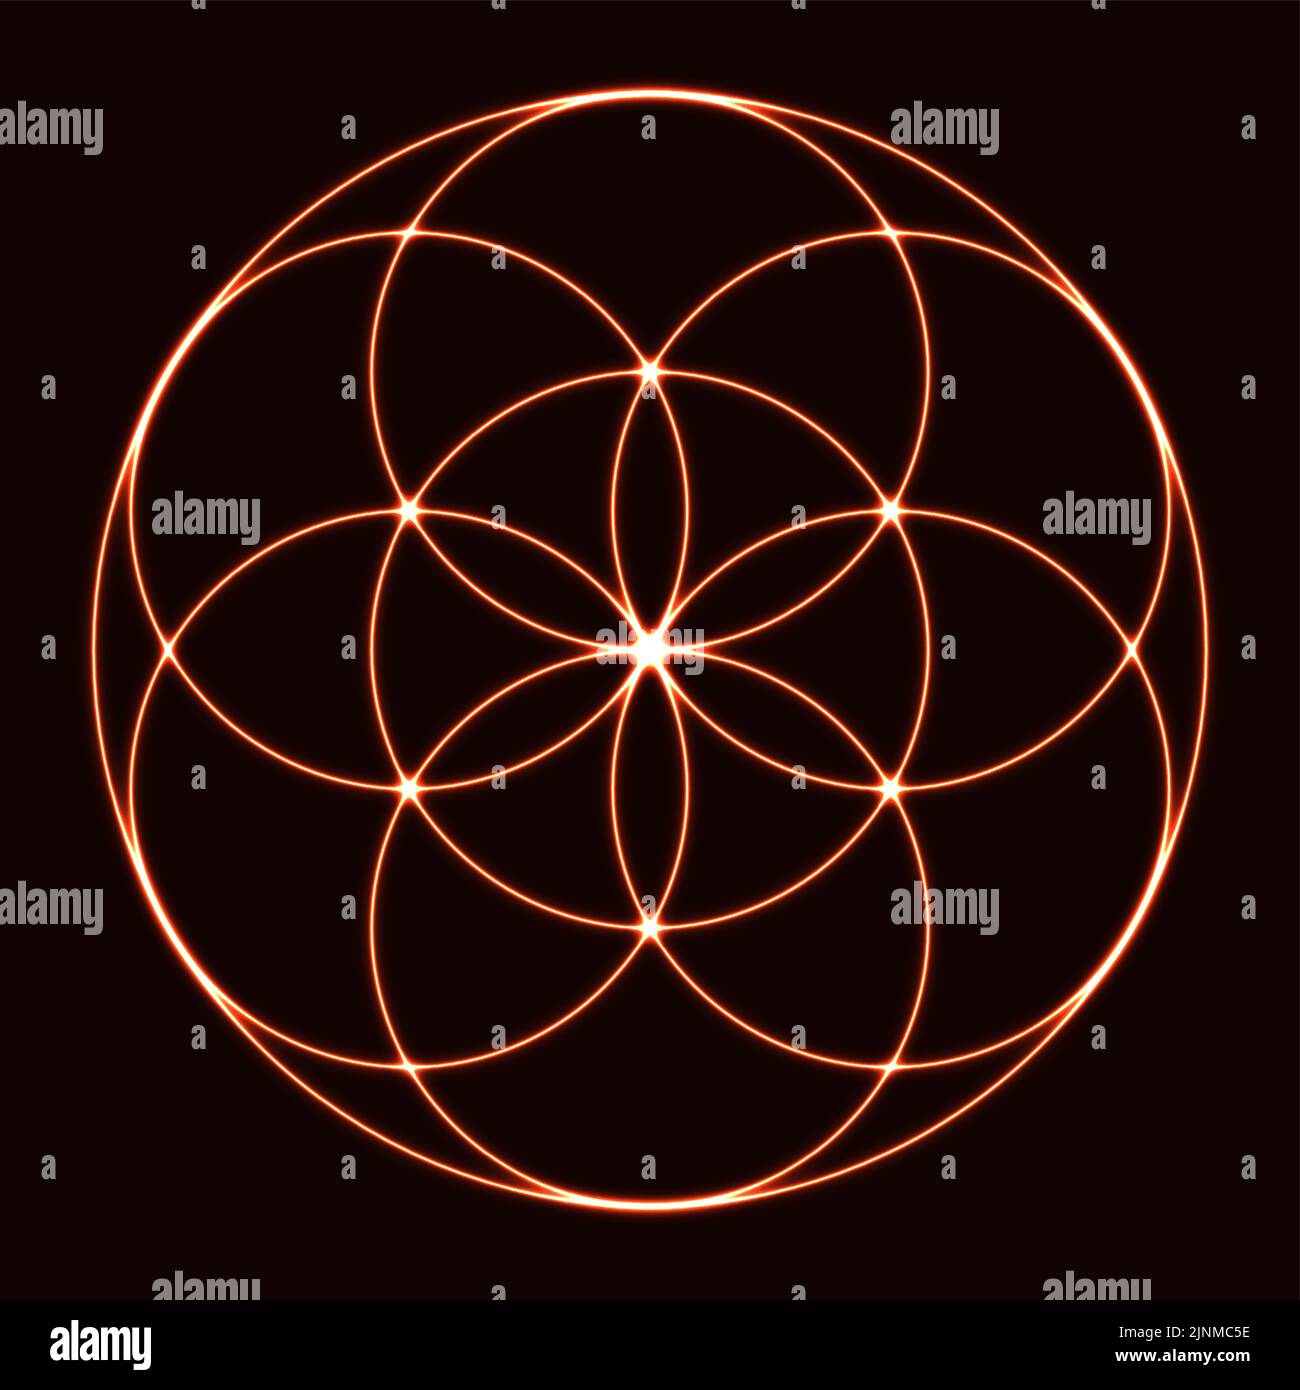 Seed of Life mit Neon-Glow-Effekt, auf schwarzem Hintergrund. Alte geometrische Figur, spirituelles Symbol und Heilige Geometrie. Überlappende Kreise. Stockfoto